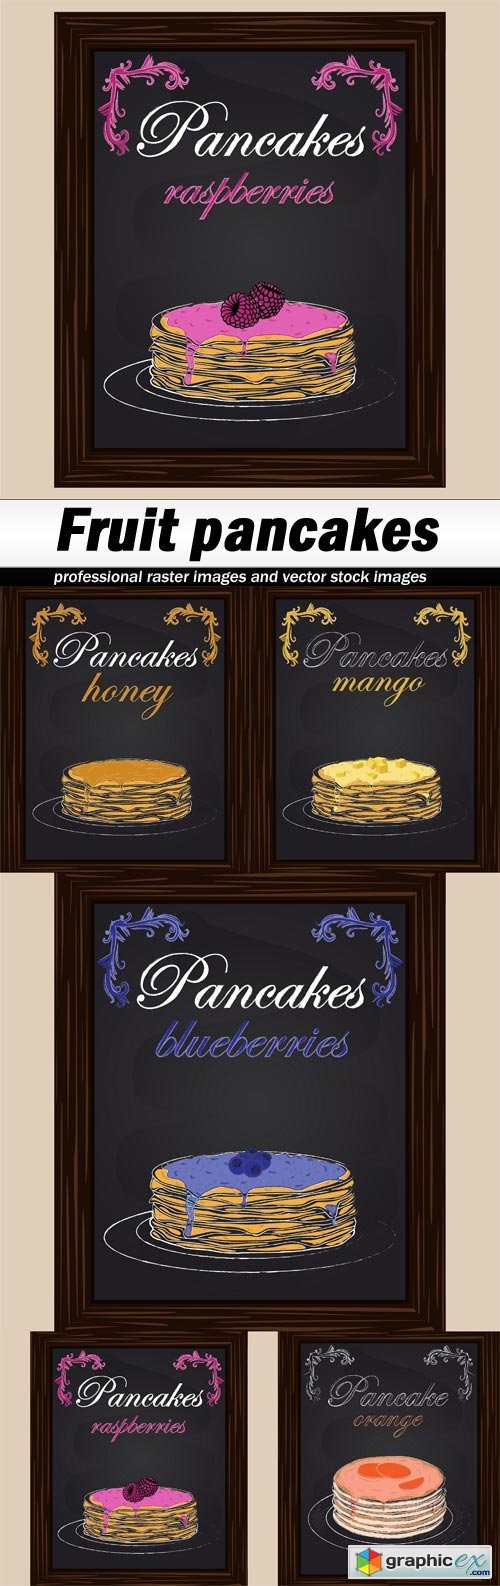 Fruit pancakes